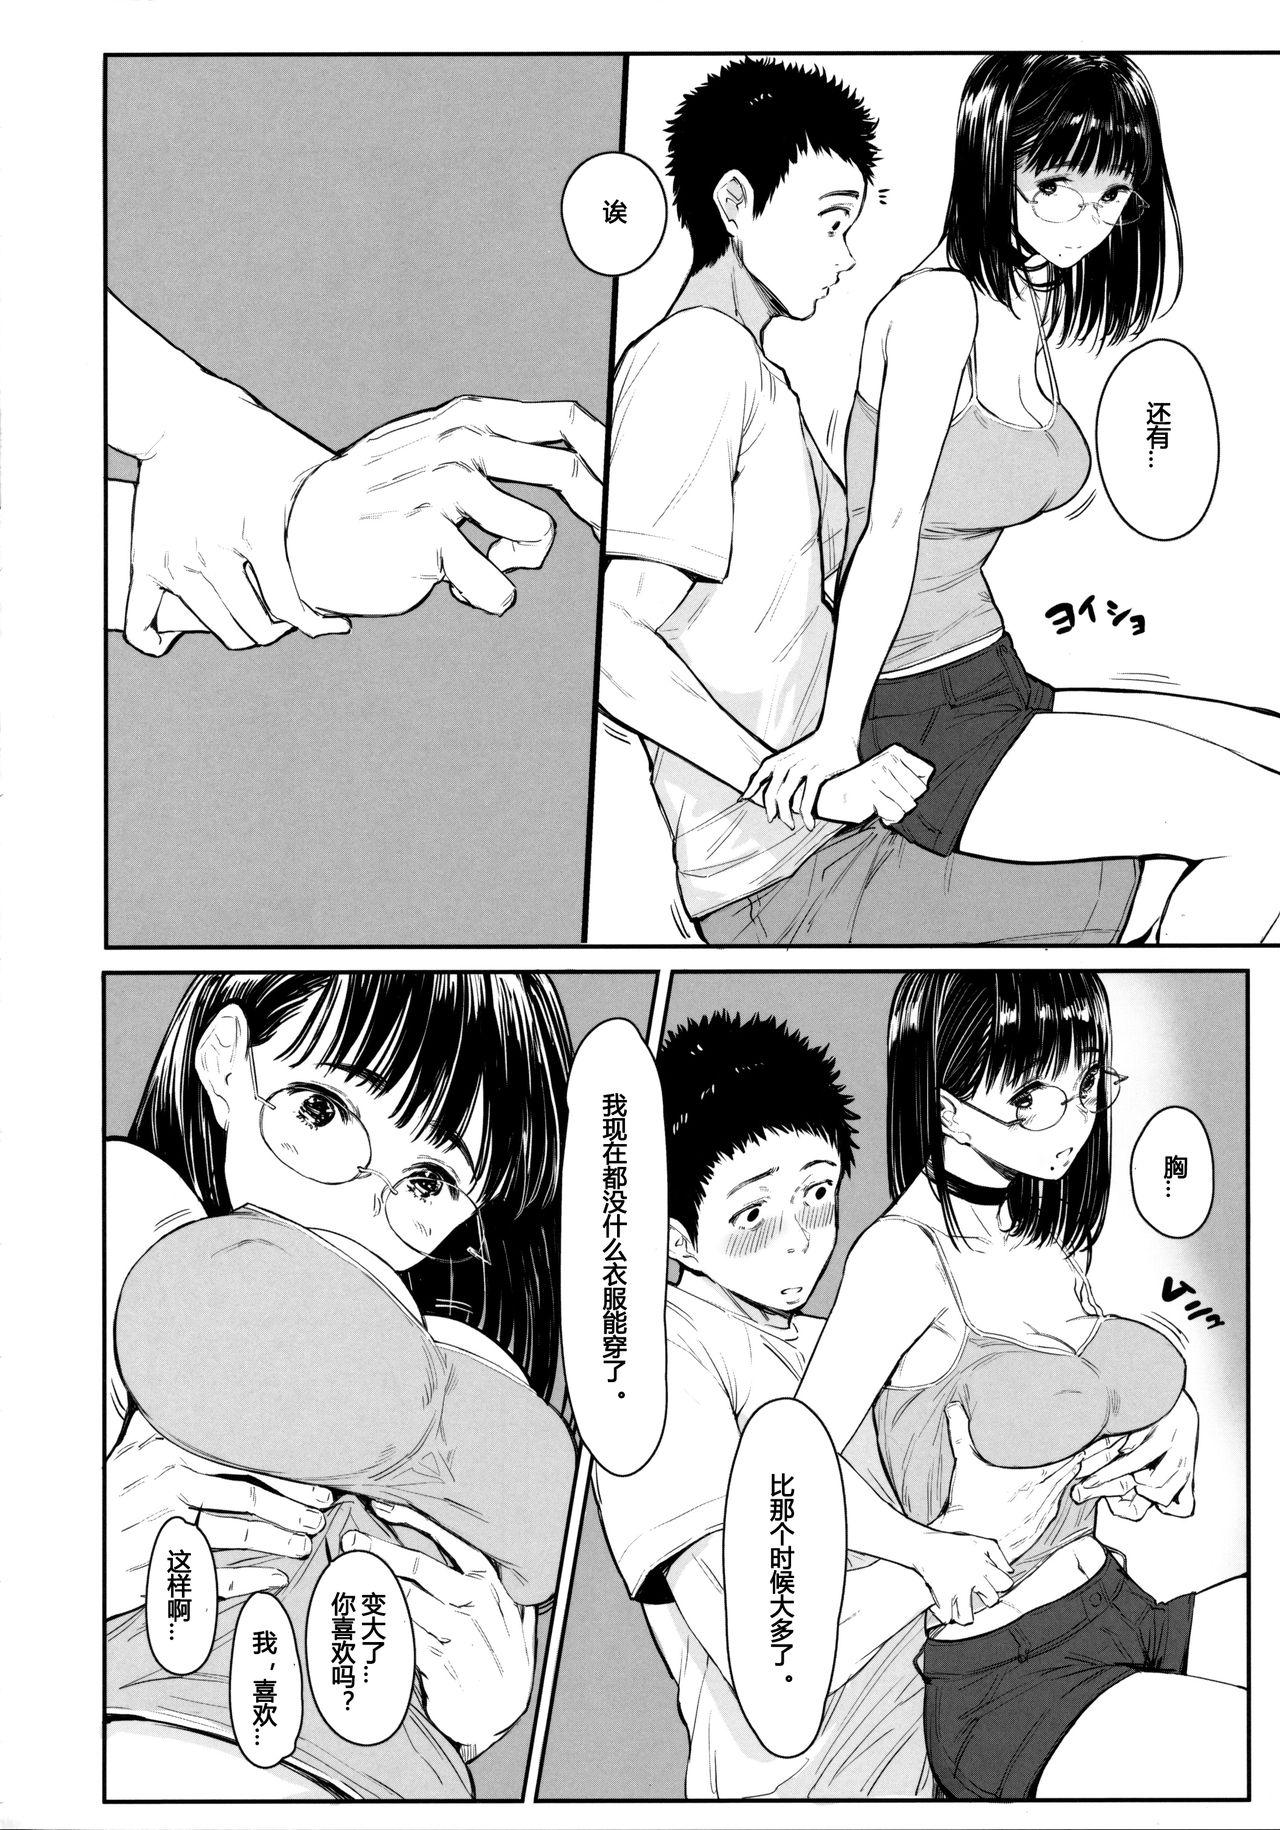 Licking Tonari no Chinatsu-chan R 05 - Original Pmv - Page 11